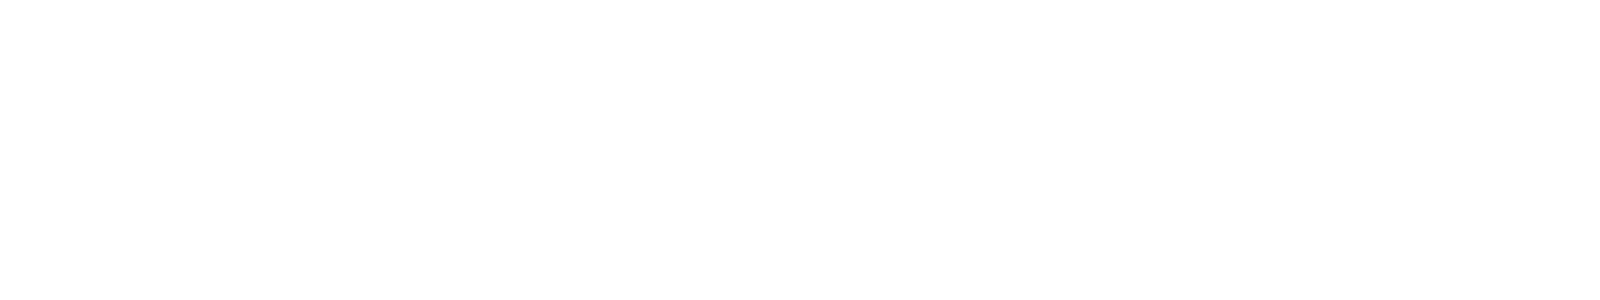 allplaytoday logo